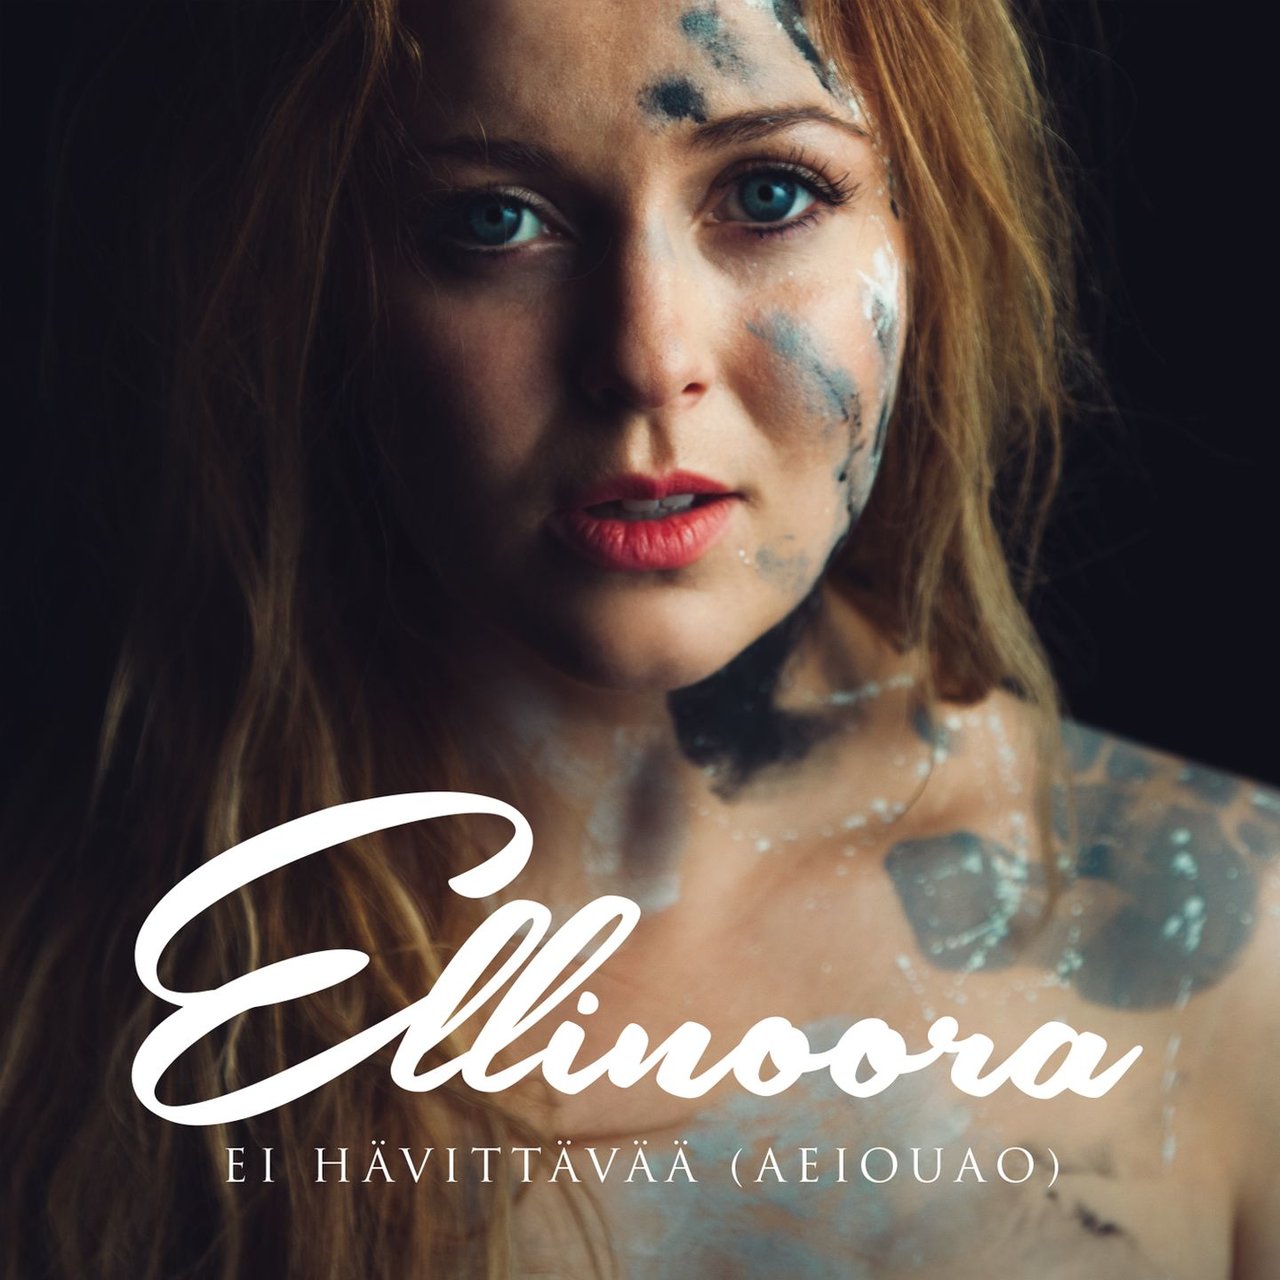 Ellinoora — Ei hävittävää (AEIOUAO) cover artwork